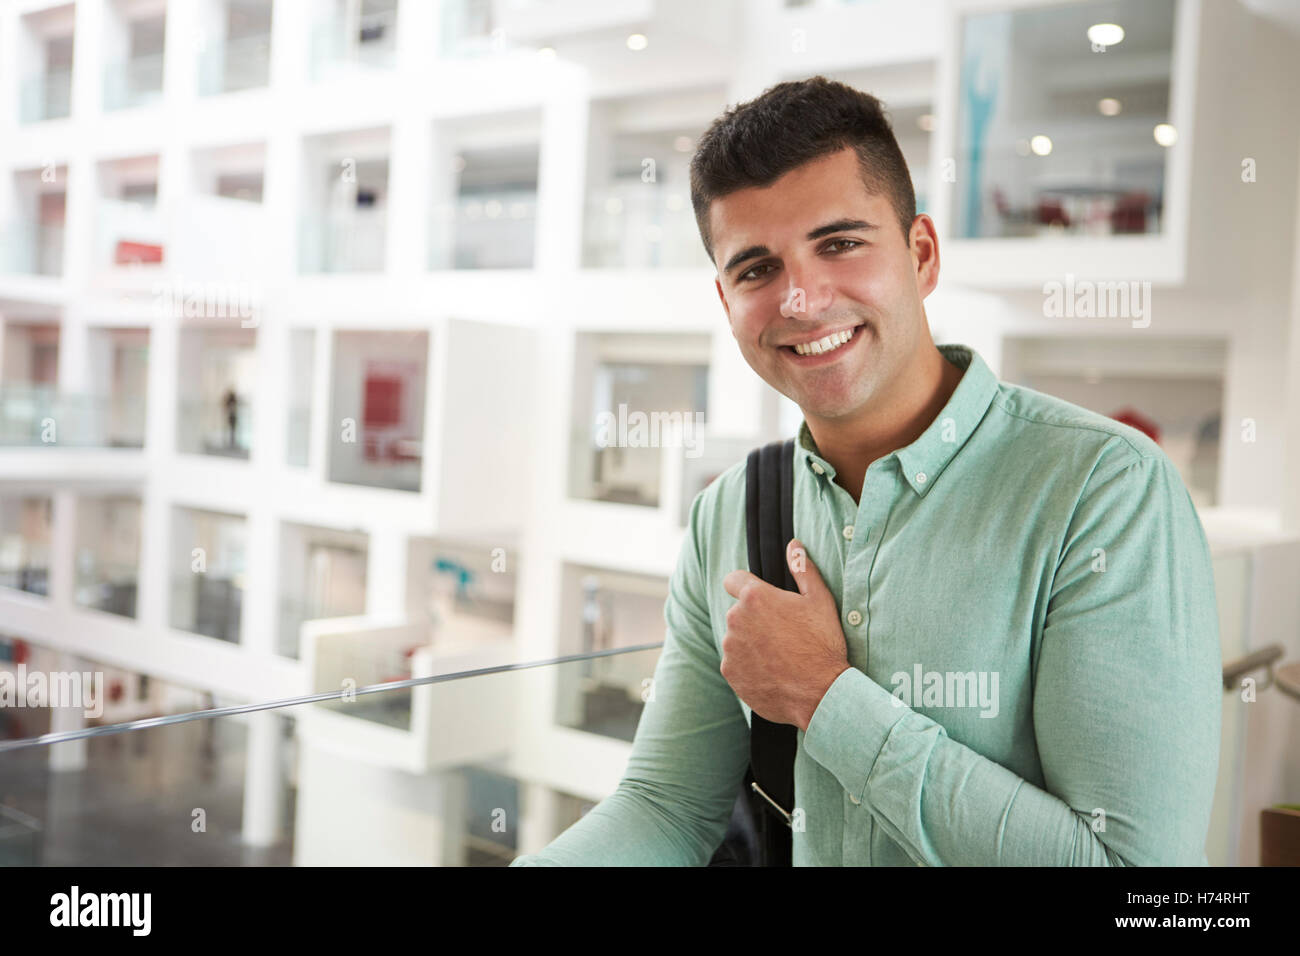 Adulto Joven estudiante varón de Oriente Medio sonriendo a cámara Foto de stock